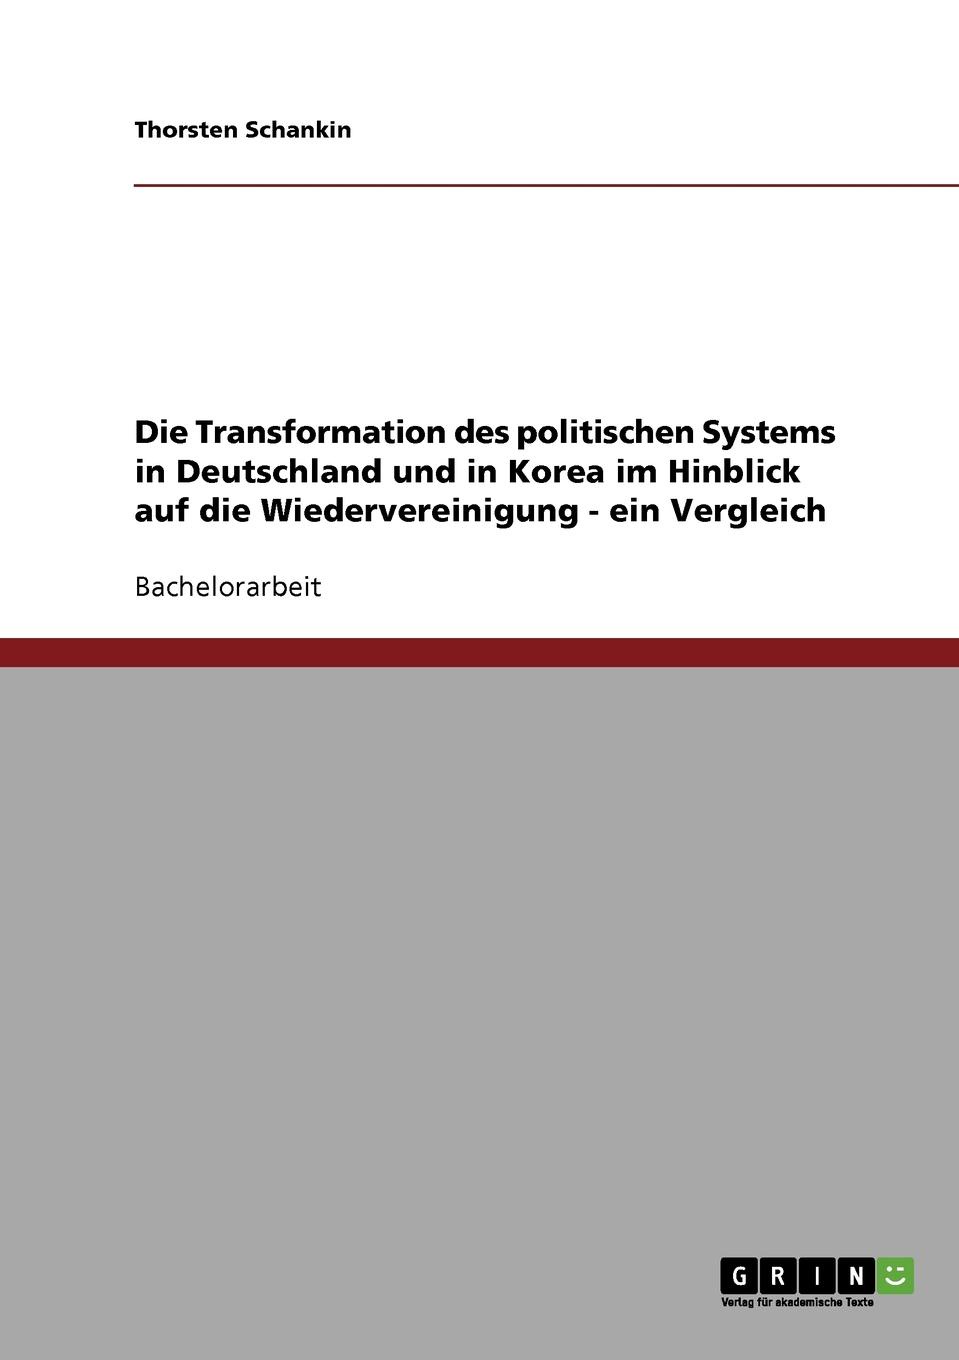 Die Transformation des politischen Systems in Deutschland und in Korea im Hinblick auf die Wiedervereinigung - ein Vergleich